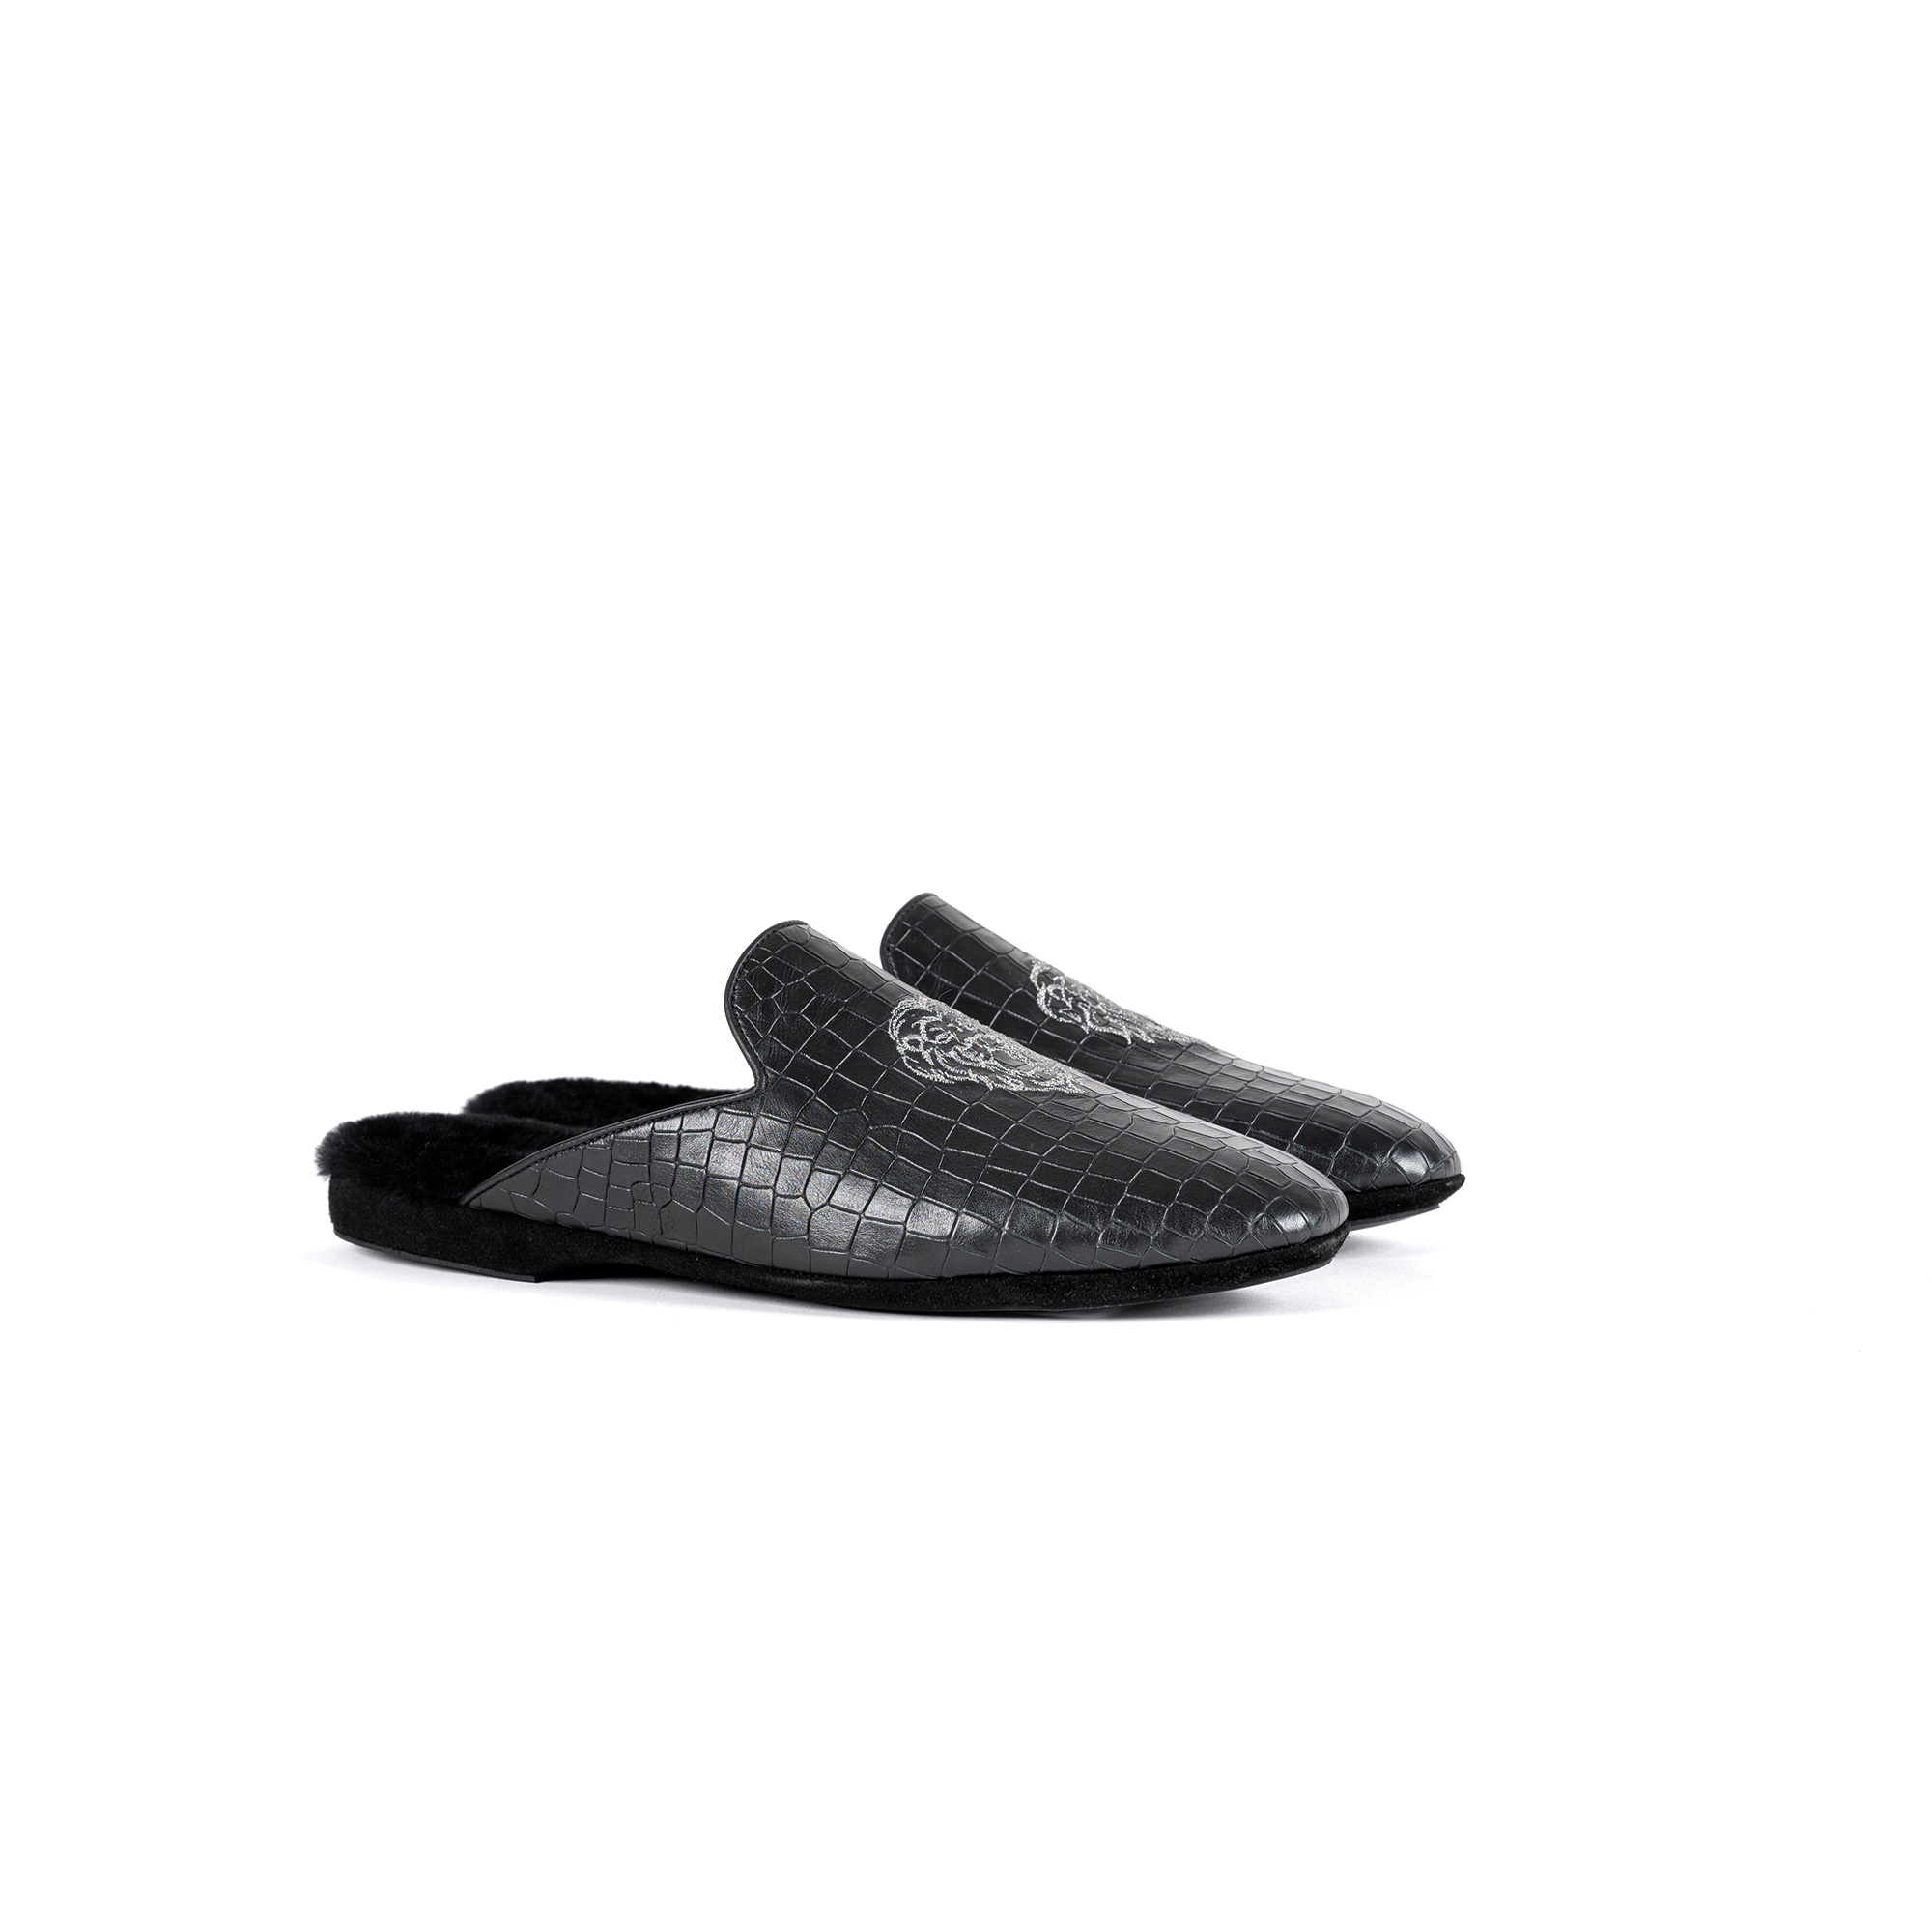 Pantofola interno lusso in pelle stampato cocco nero - Farfalla italian slippers